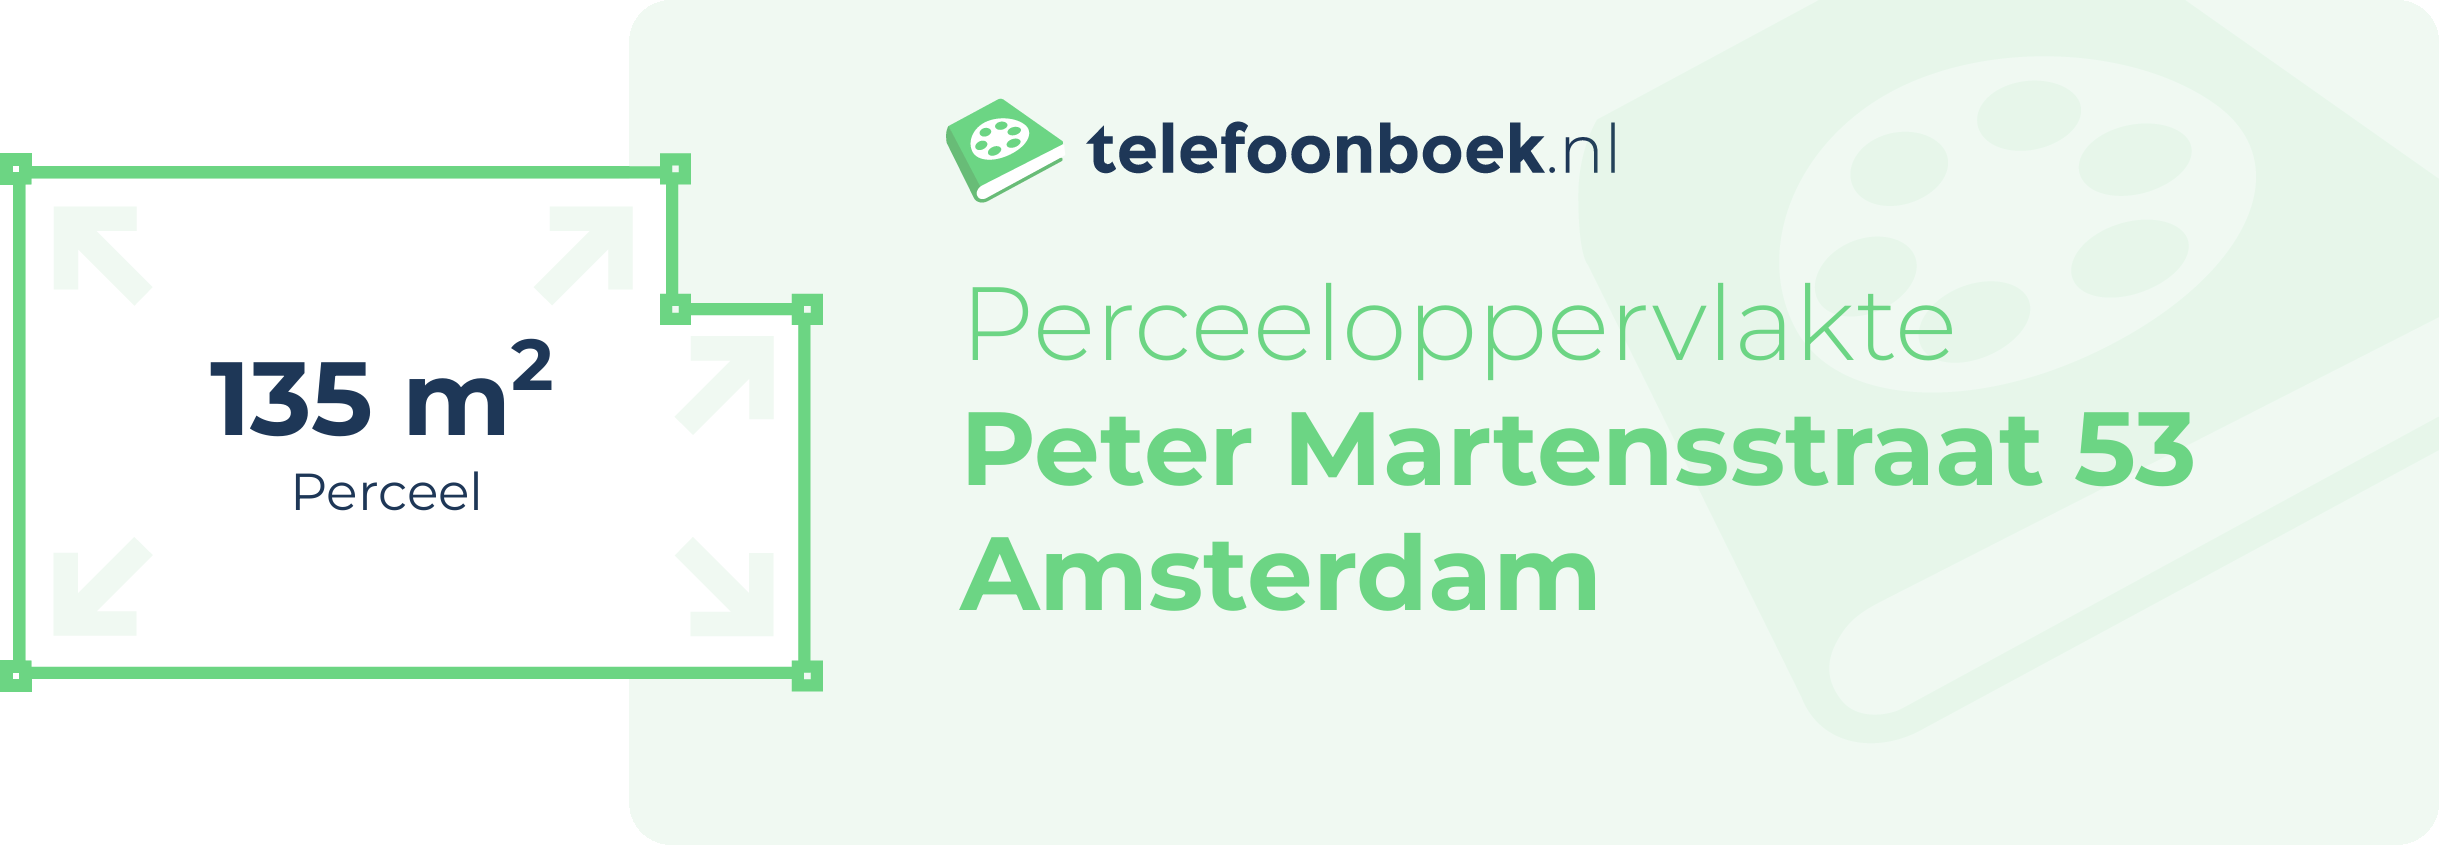 Perceeloppervlakte Peter Martensstraat 53 Amsterdam